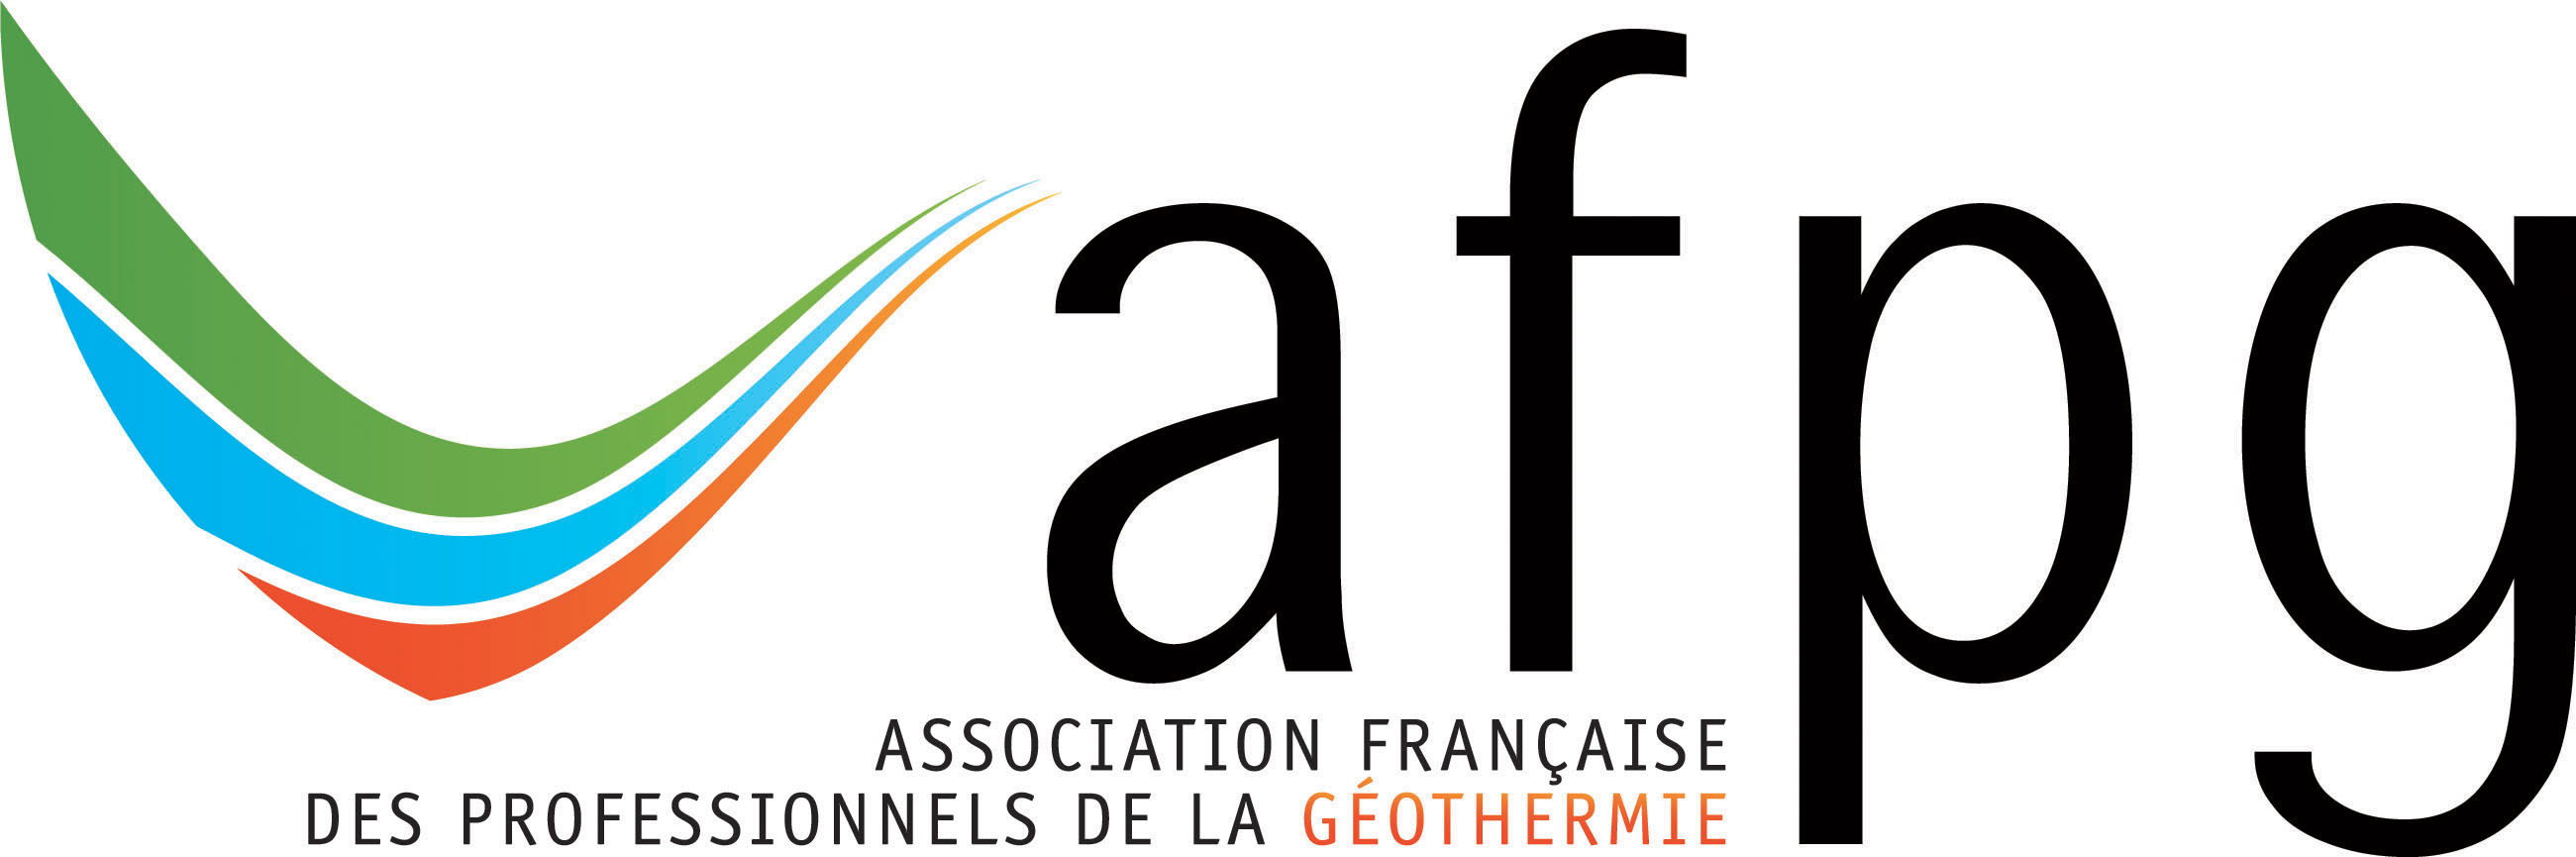 L'Association Française des Professionnels de la Géothermie